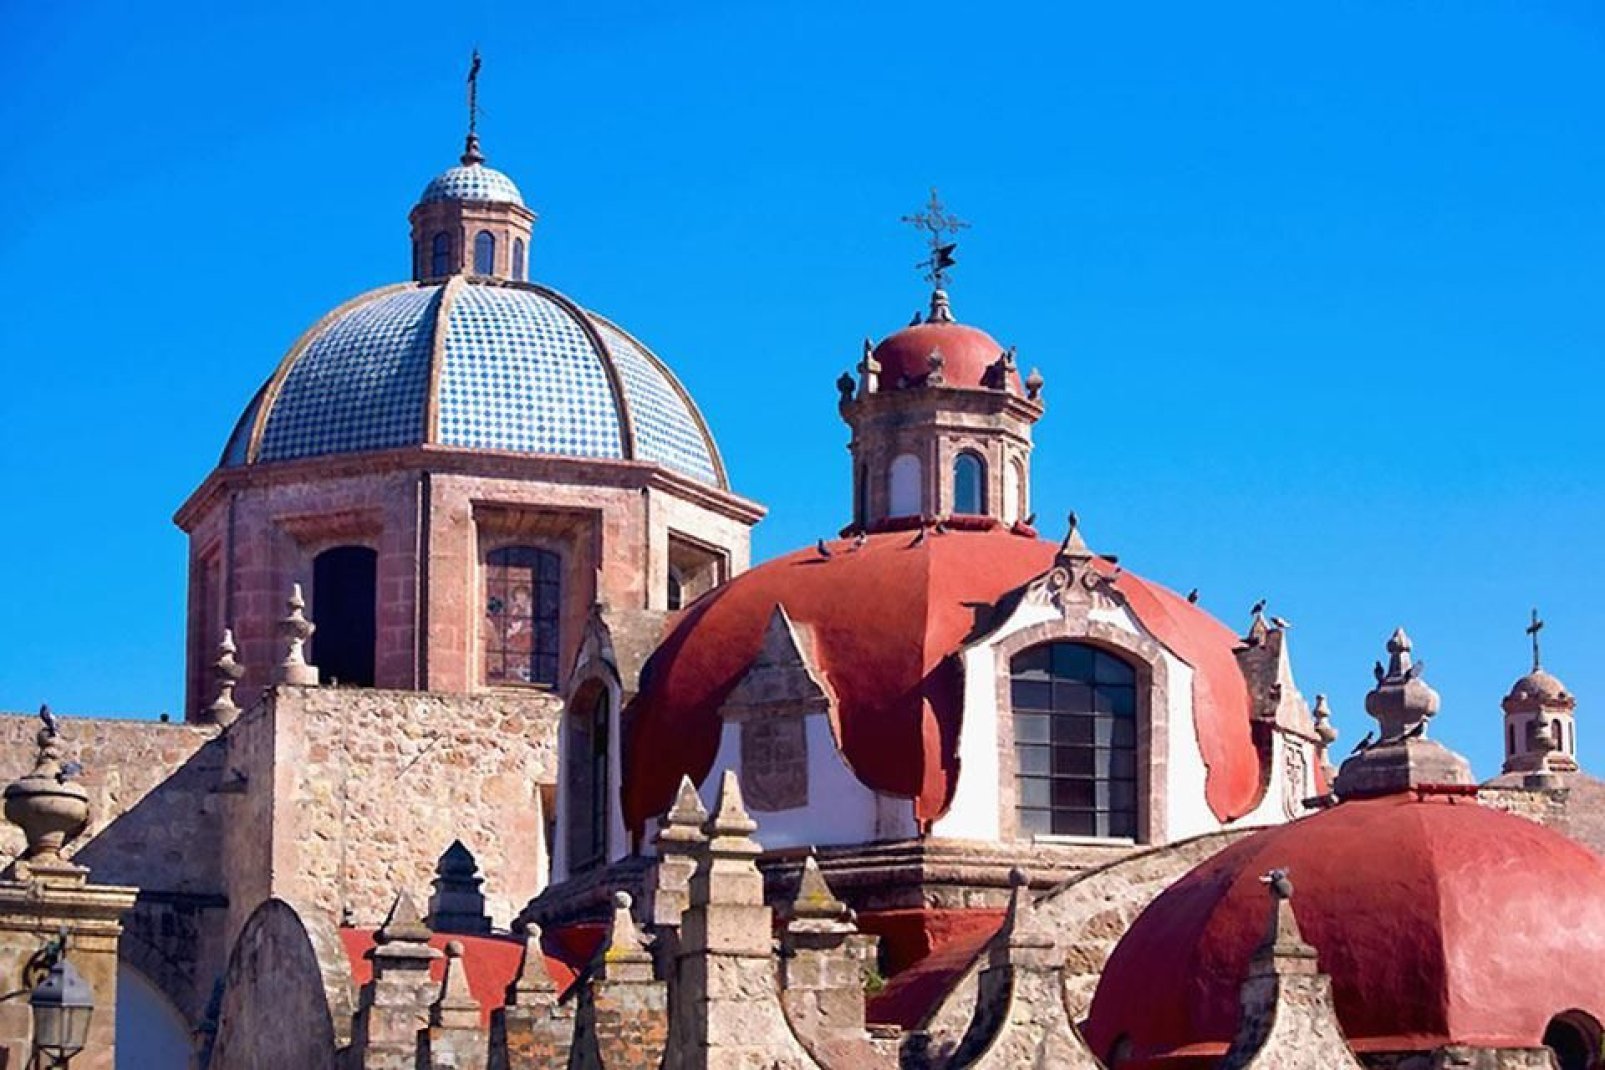 Morelia è una cattedrale barocca con i tetti colorati risalente al XVII secolo.